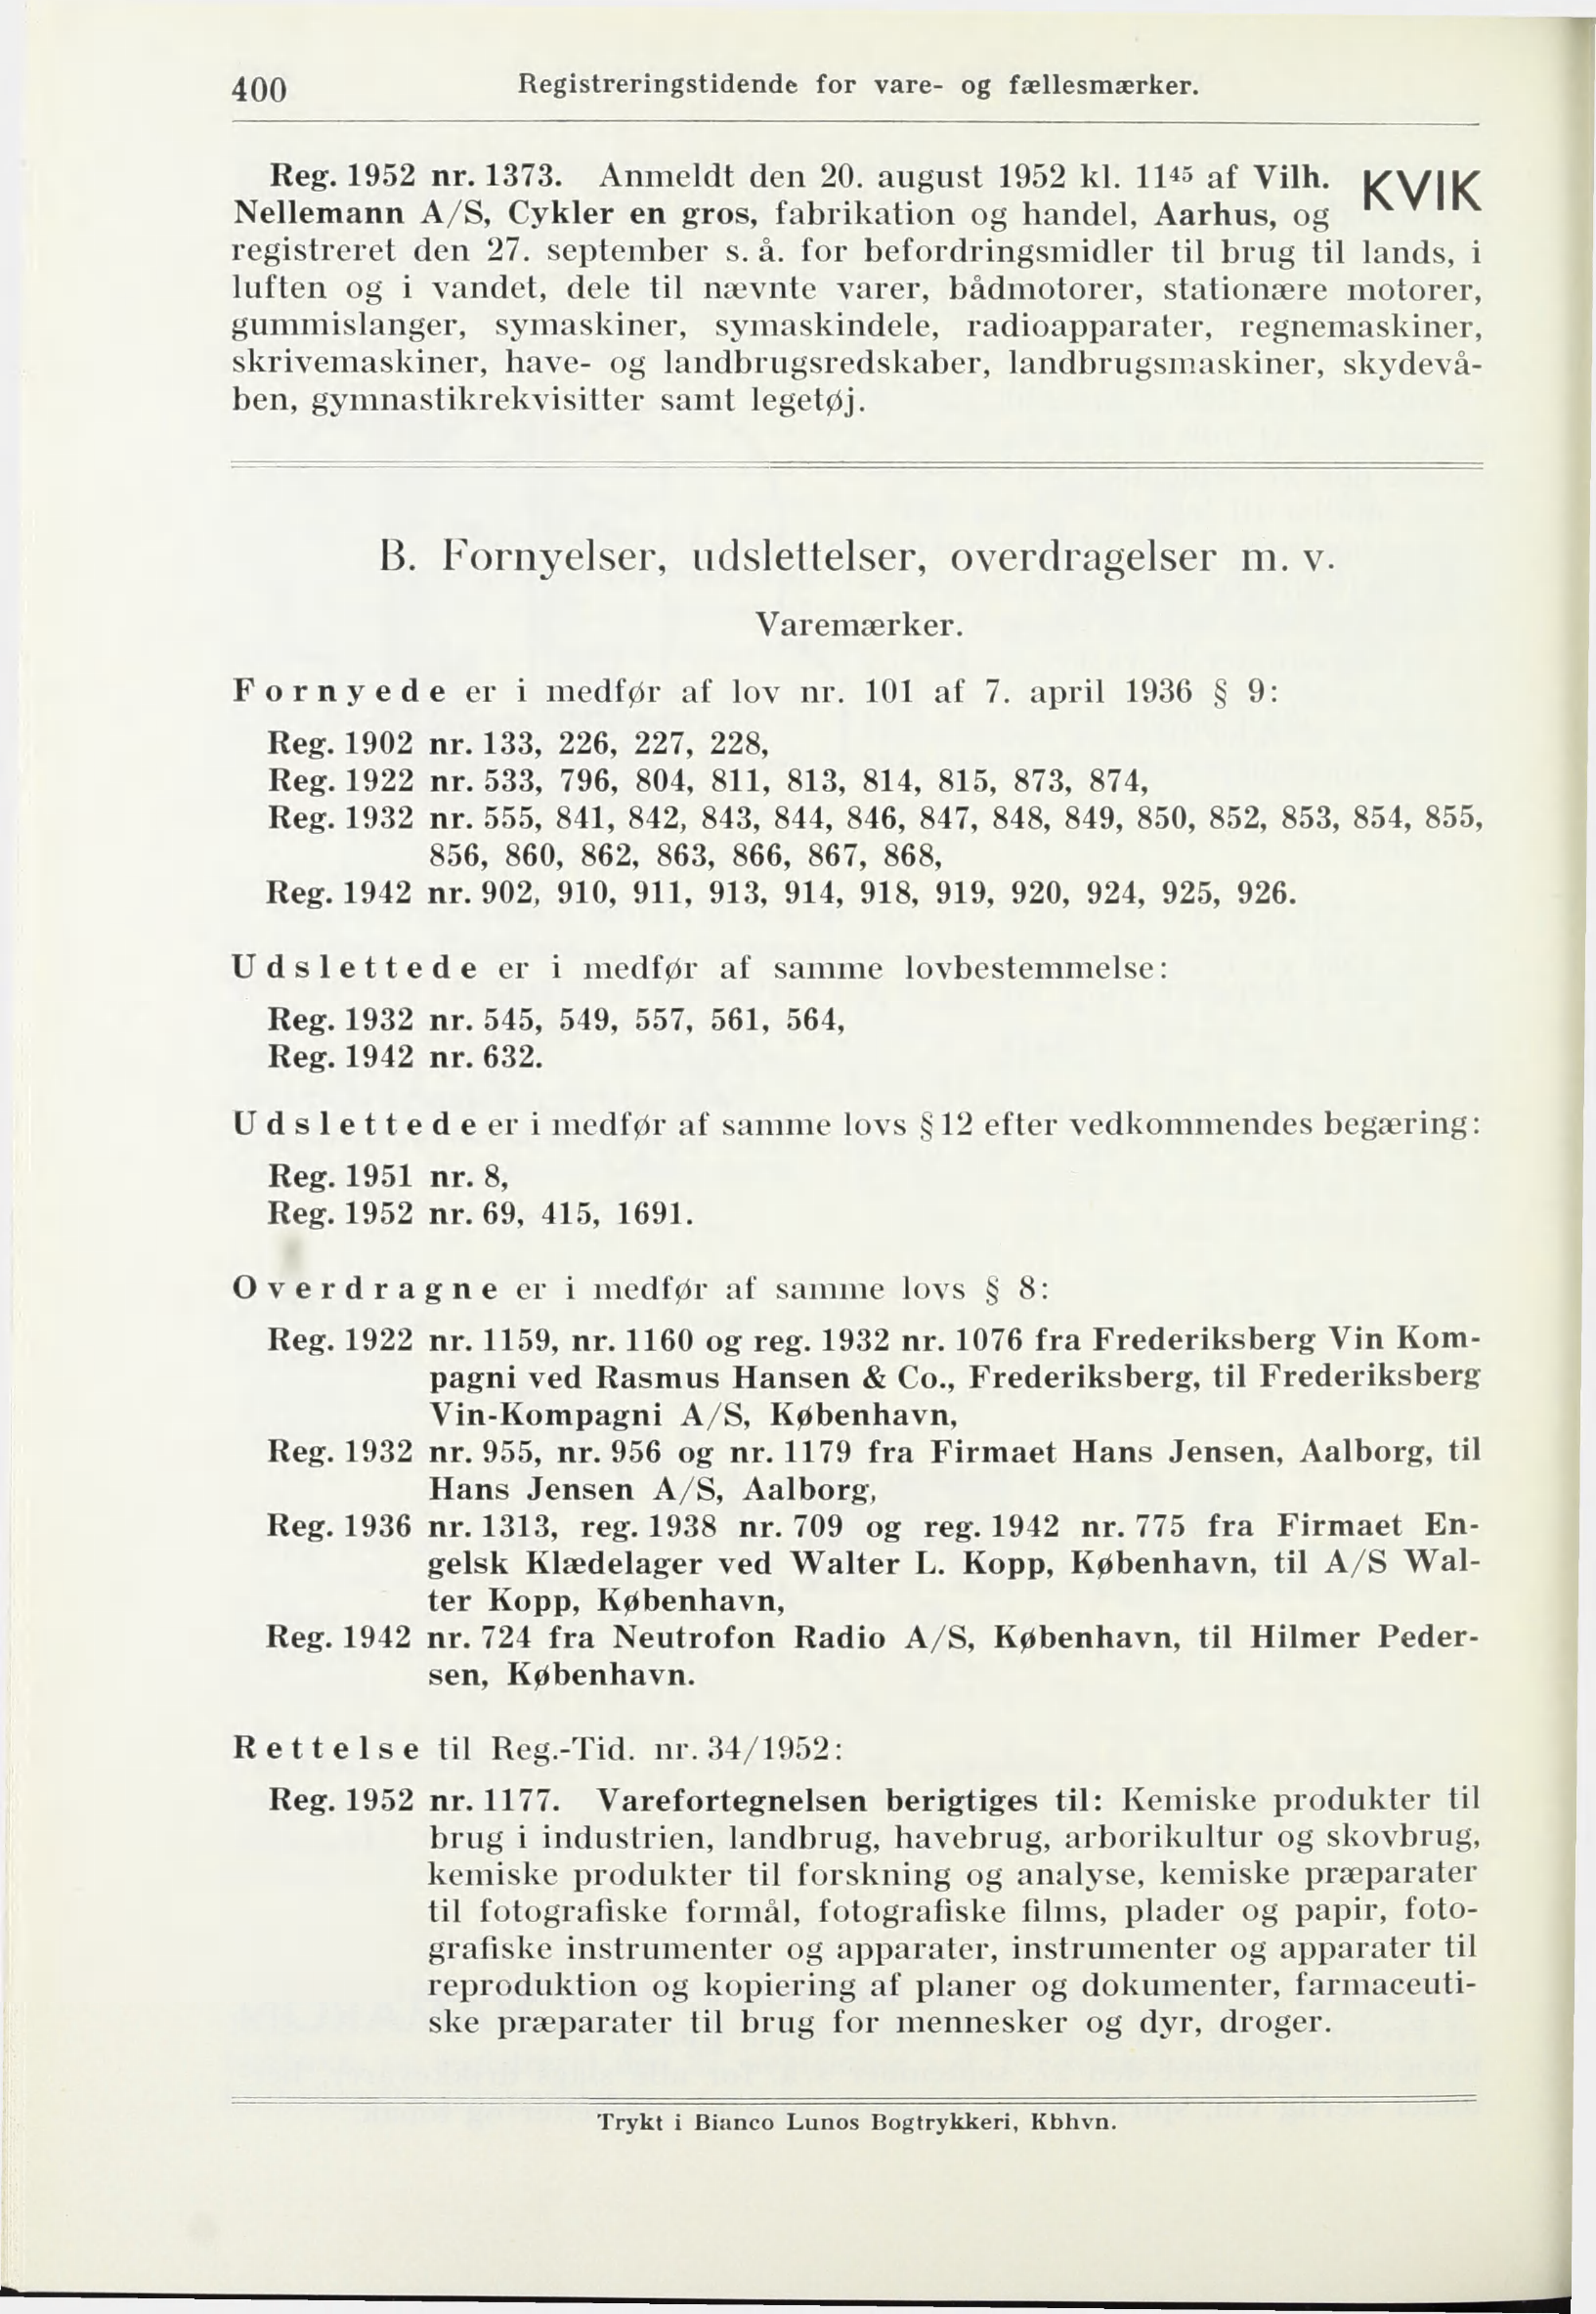 400 Reg. 1952 nr. 1373. Anmeldt den 20. august 1952 kl. 1145 af Vilh. ^\/ ^ Nellemann A/S, Cykler en gros, fabrikation og handel, Aarhus, og registreret den 27. september s. å.